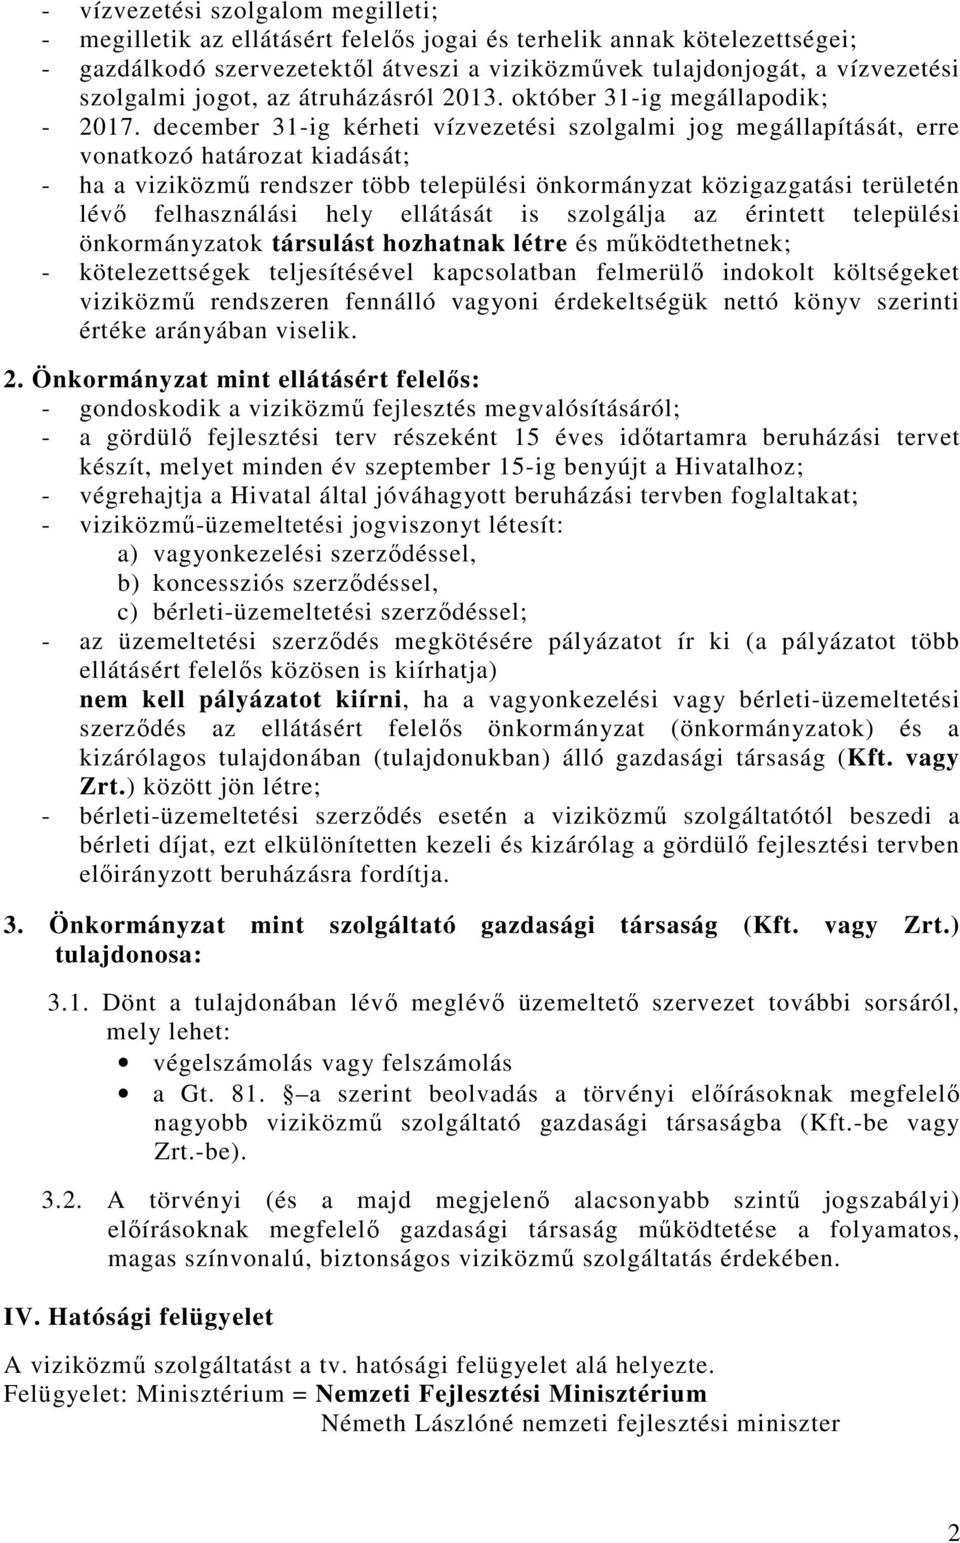 december 31-ig kérheti vízvezetési szolgalmi jog megállapítását, erre vonatkozó határozat kiadását; - ha a viziközmő rendszer több települési önkormányzat közigazgatási területén lévı felhasználási